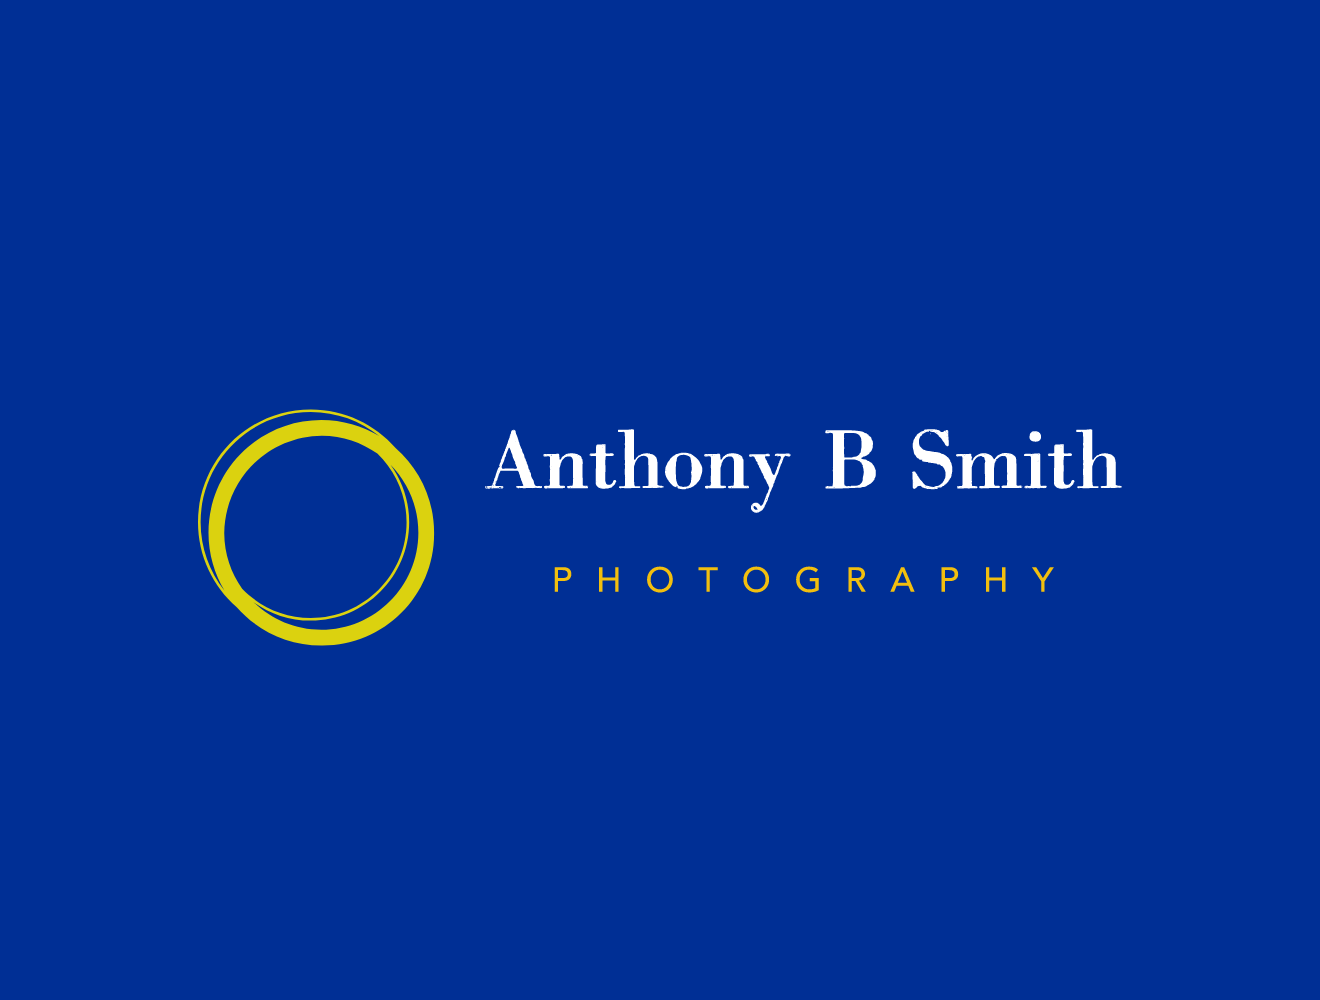 ABSmith Photography